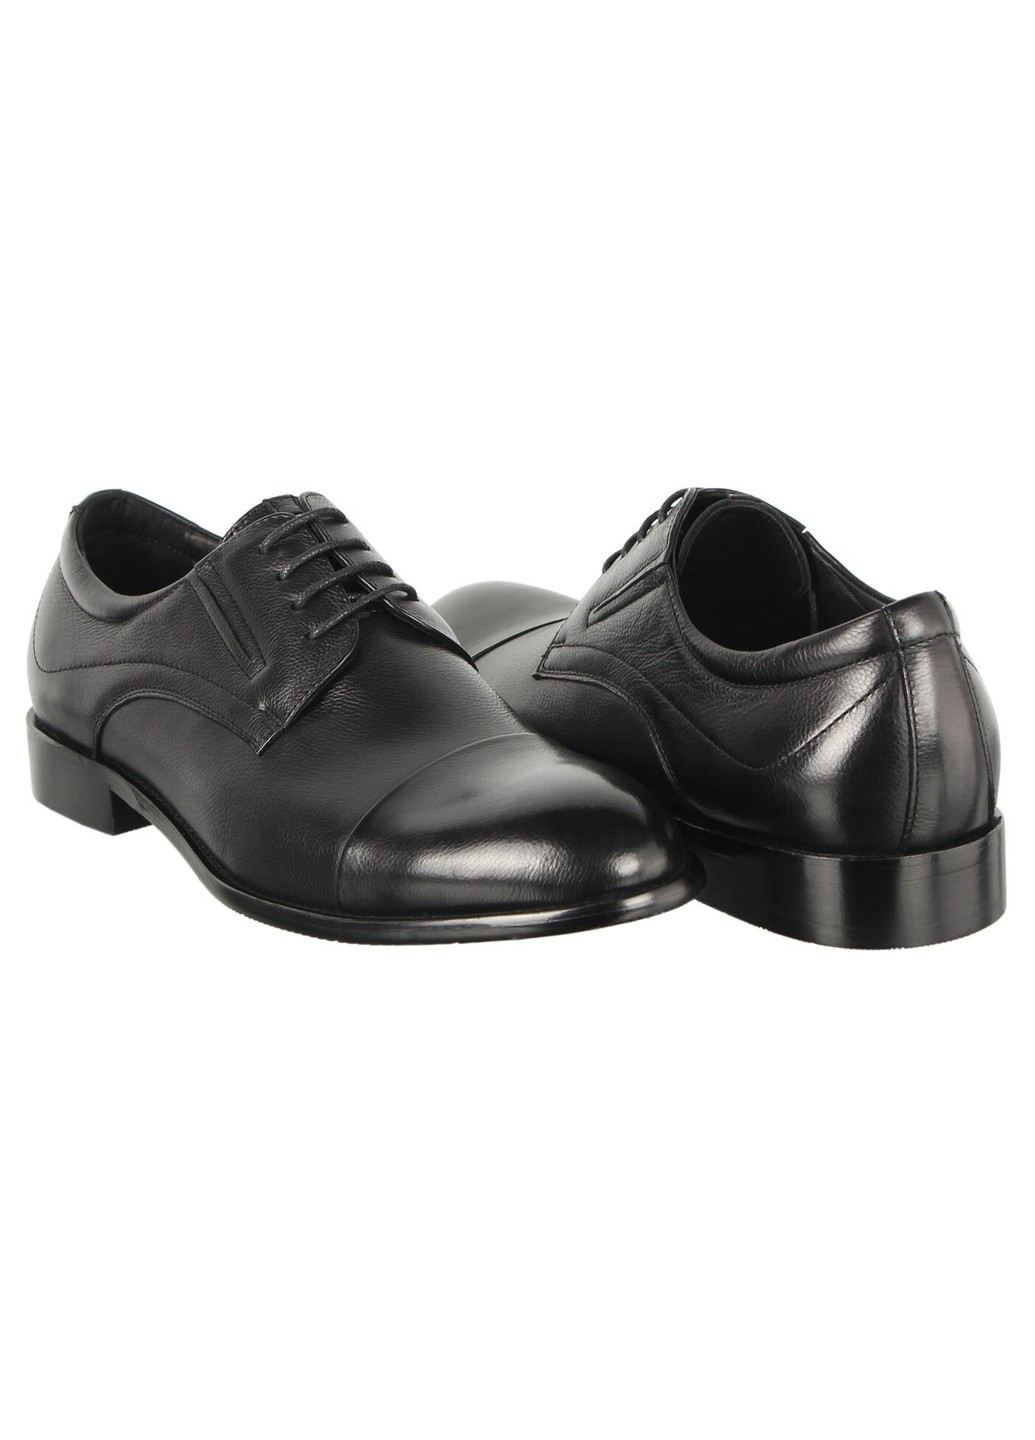 Черные мужские классические туфли 196609 Cosottinni на шнурках